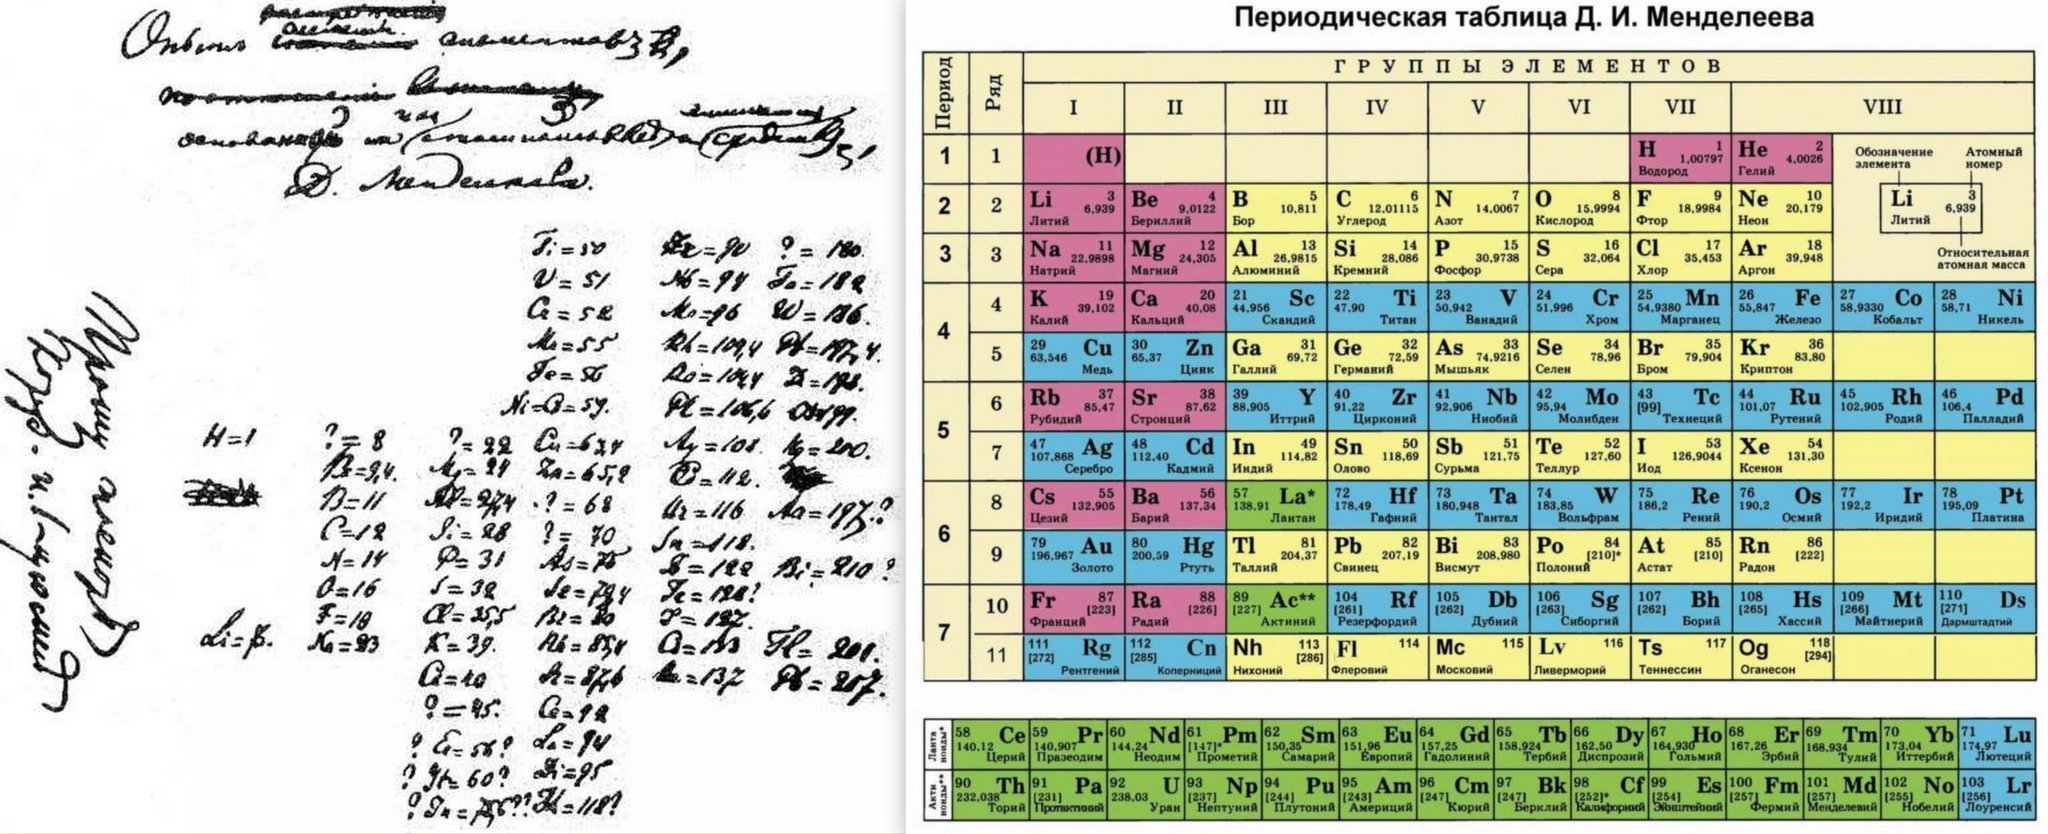 40 18 элемент. Периодическая система Менделеева 1869. Периодическая таблица Менделеева 1869. Первая таблица Менделеева 1869. Периодическая таблица Менделеева первоначальный вид.